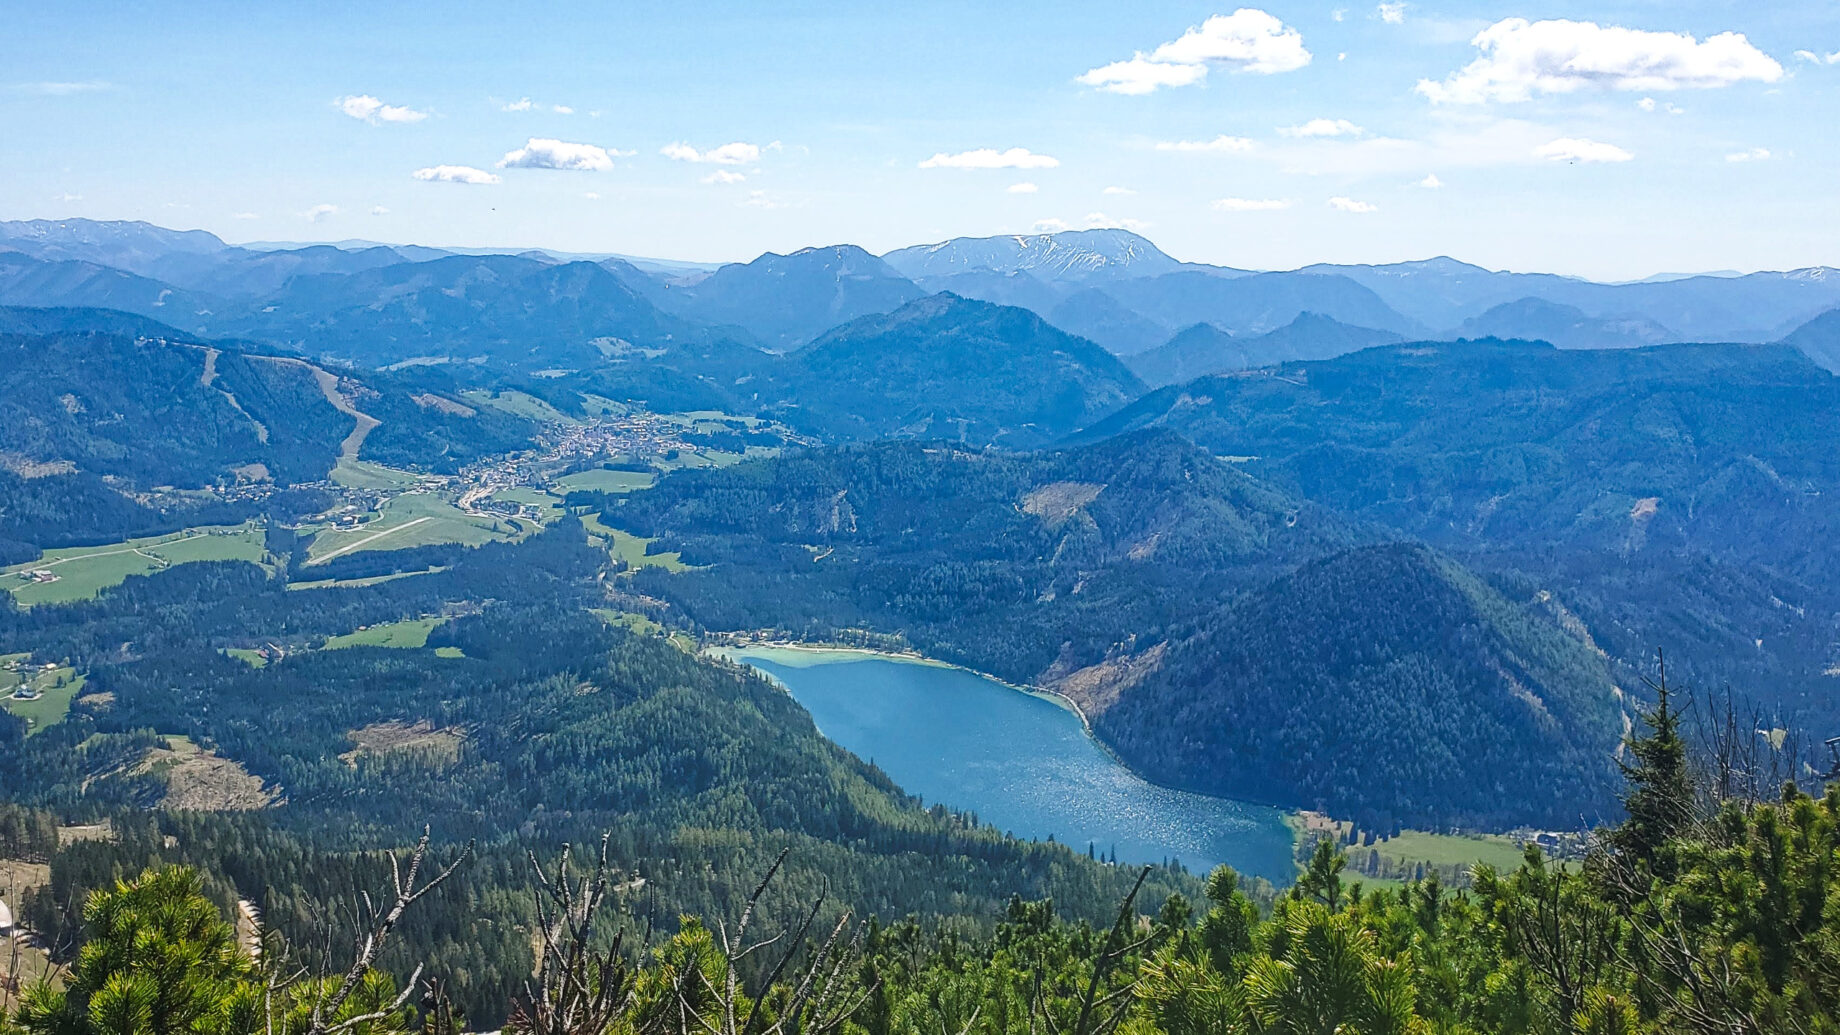 Blick vom Gipfel auf den Erlaufsee (mein nächstes Ziel) und Richtung Mariazell. Foto: Linda Prähauser